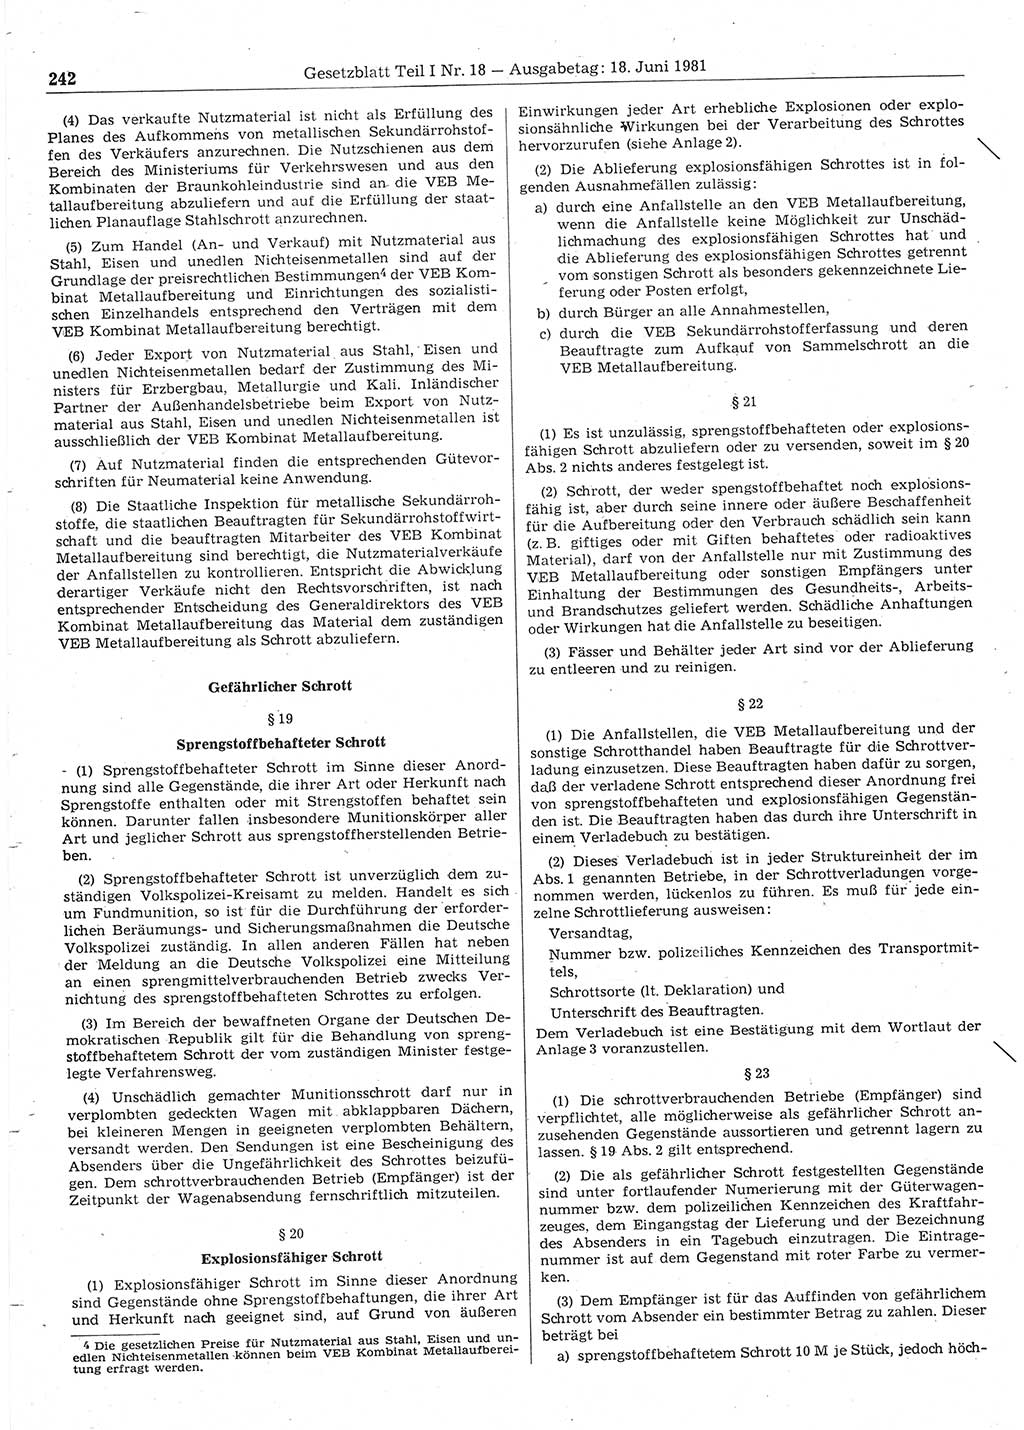 Gesetzblatt (GBl.) der Deutschen Demokratischen Republik (DDR) Teil Ⅰ 1981, Seite 242 (GBl. DDR Ⅰ 1981, S. 242)